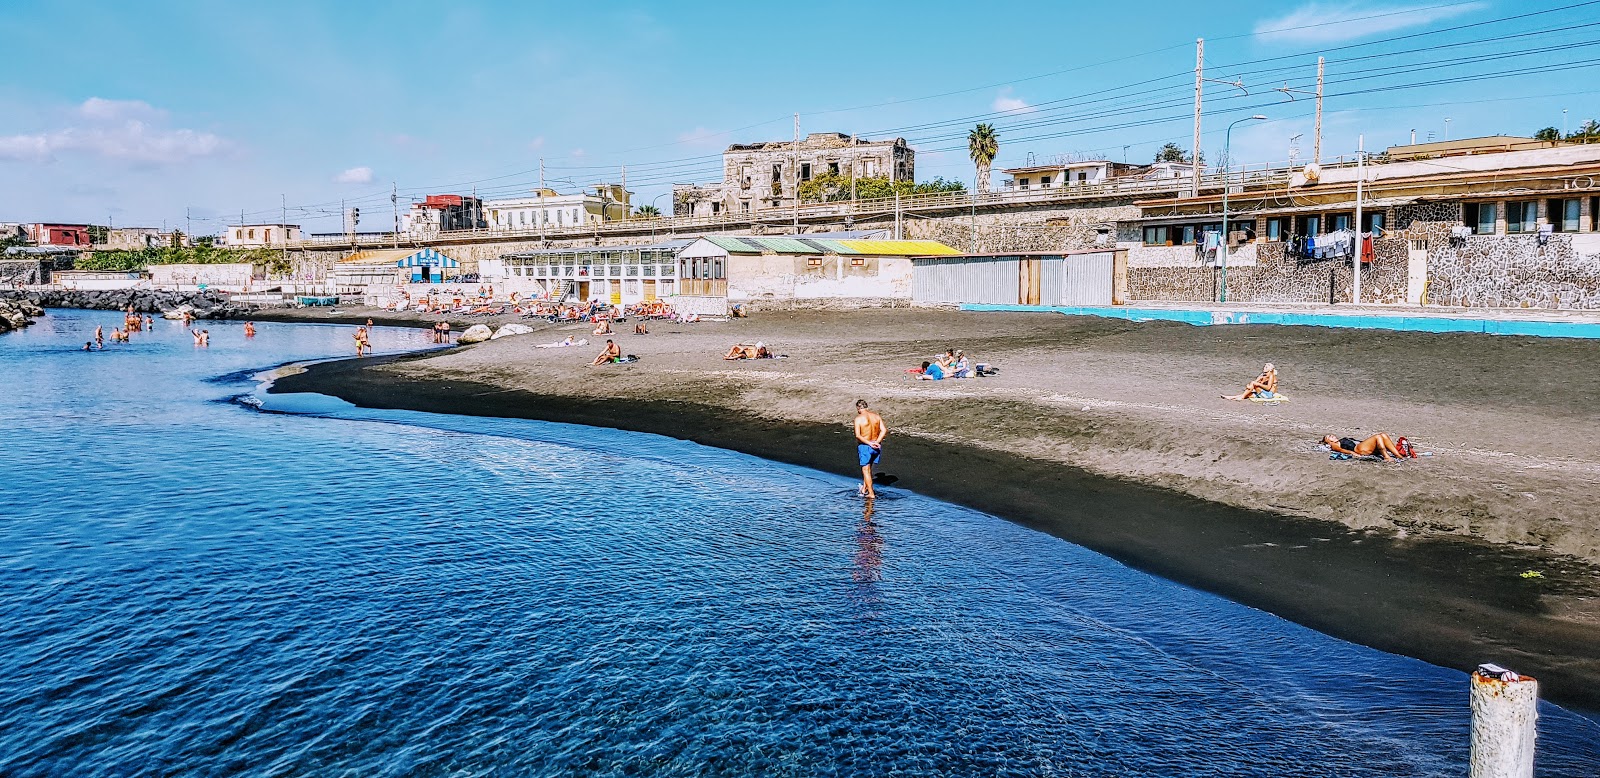 Foto av Spiaggia di via Calastro med blått vatten yta